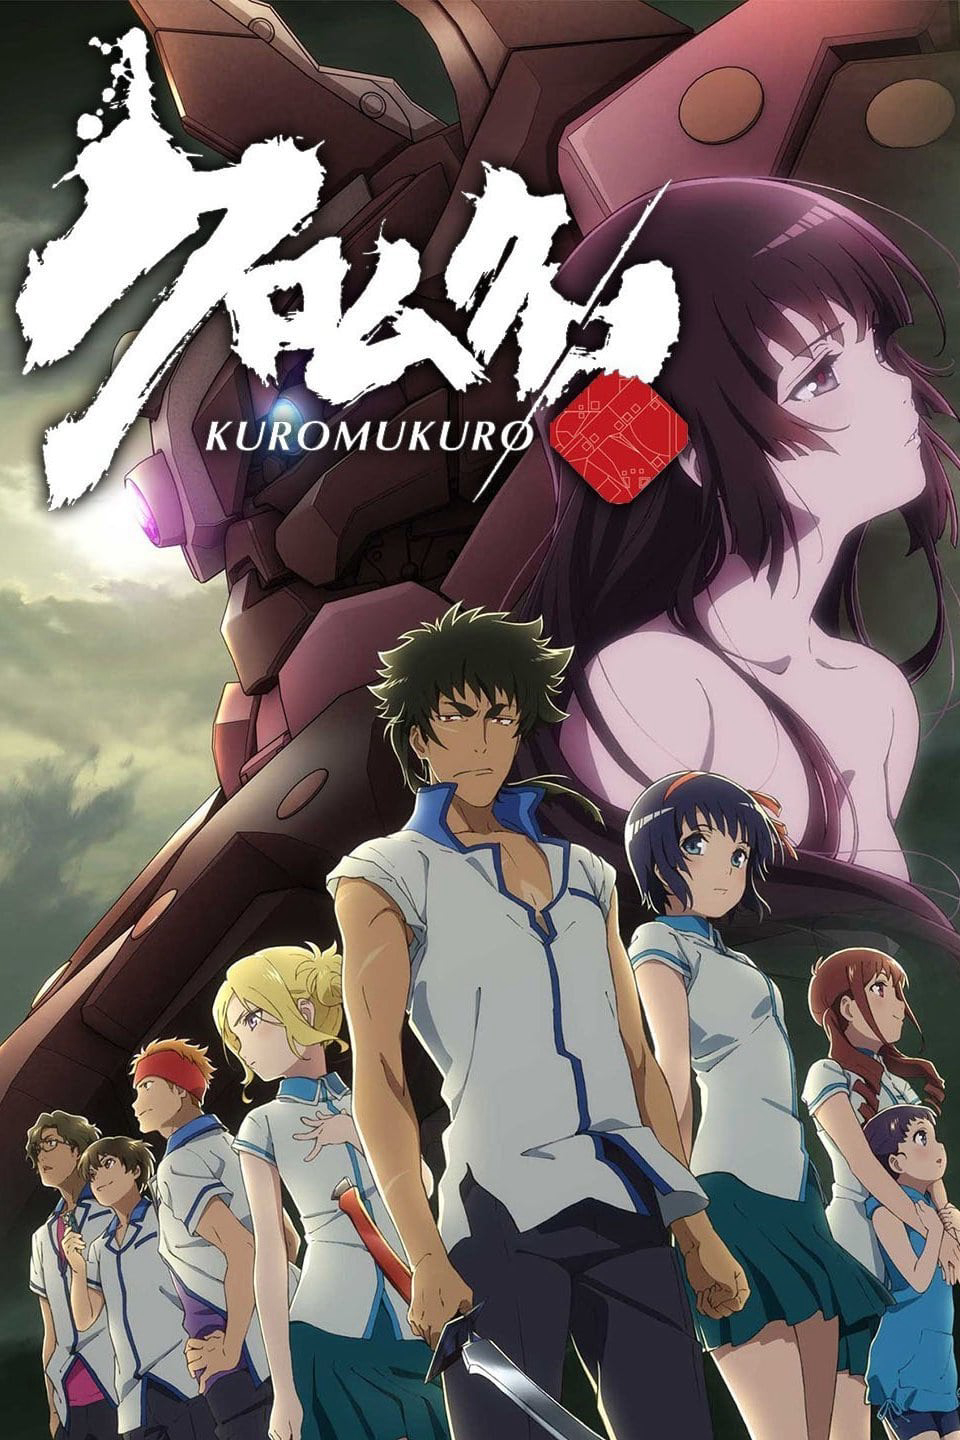 Hắc Thánh Tích (Phần 1) - Kuromukuro (Season 1)